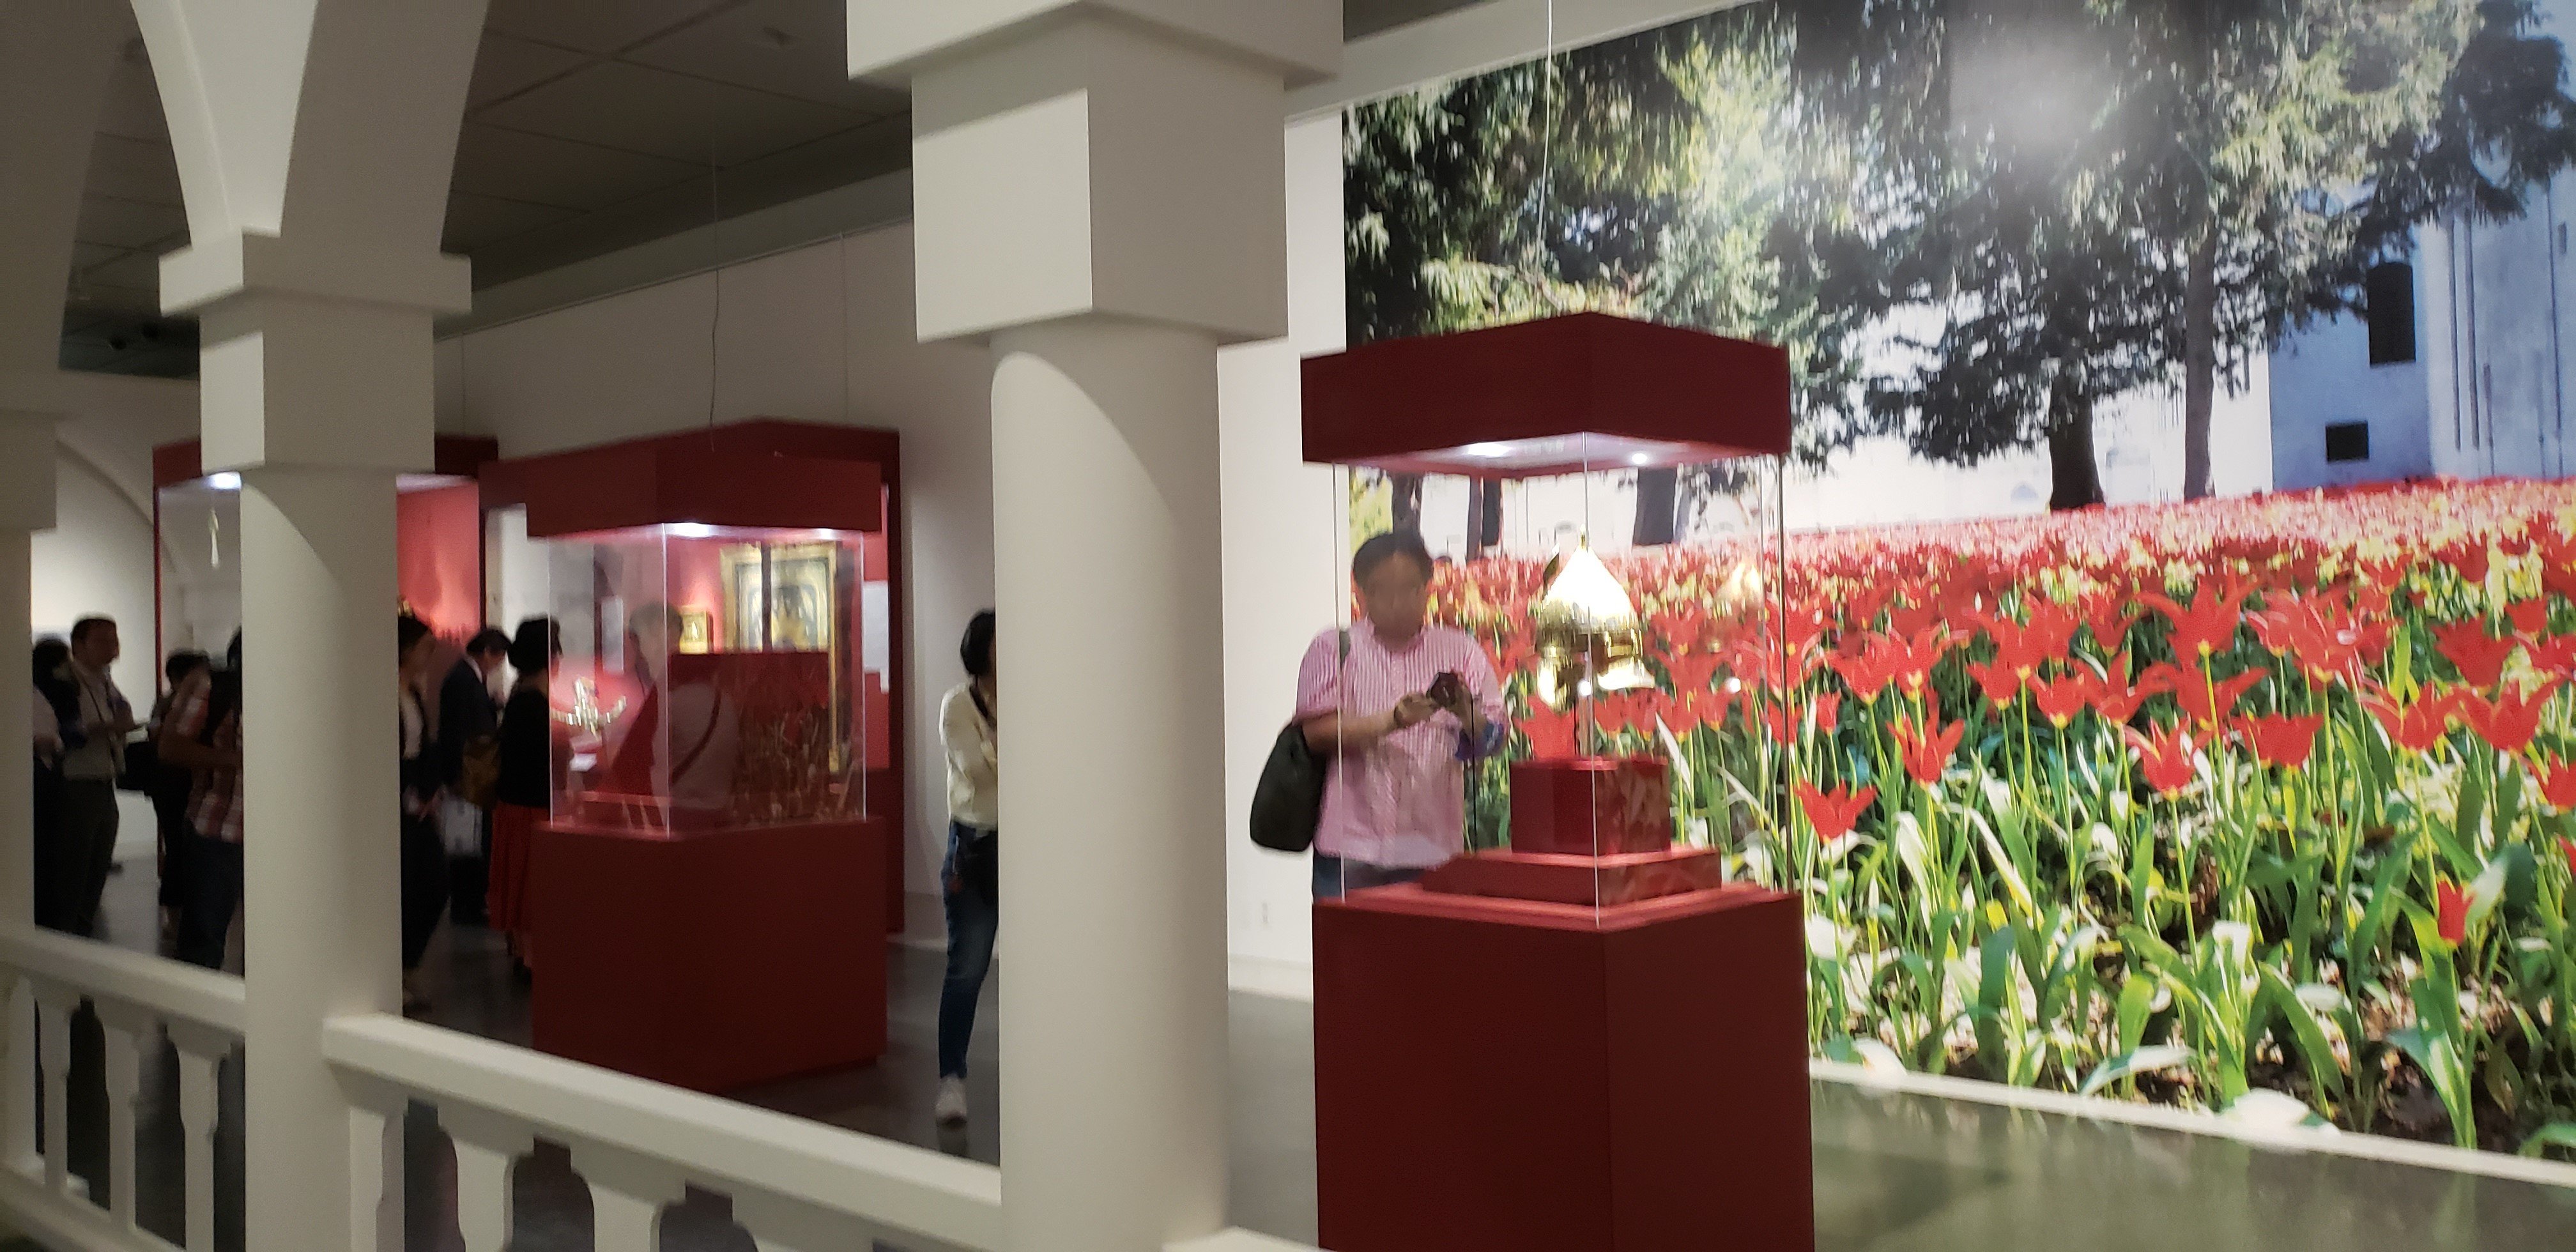 O Xrhsths 京都で遊ぼうart Sto Twitter チューリップはトルコ人の祖先が中央アジアから伝えたといわれ オスマン帝国の皇帝 スルタン はもちろん人々にも親しまれる花 なんとチューリップ専用の一輪挿し 一枚目 まであります 三枚目は水たばこ 花瓶のイメージ